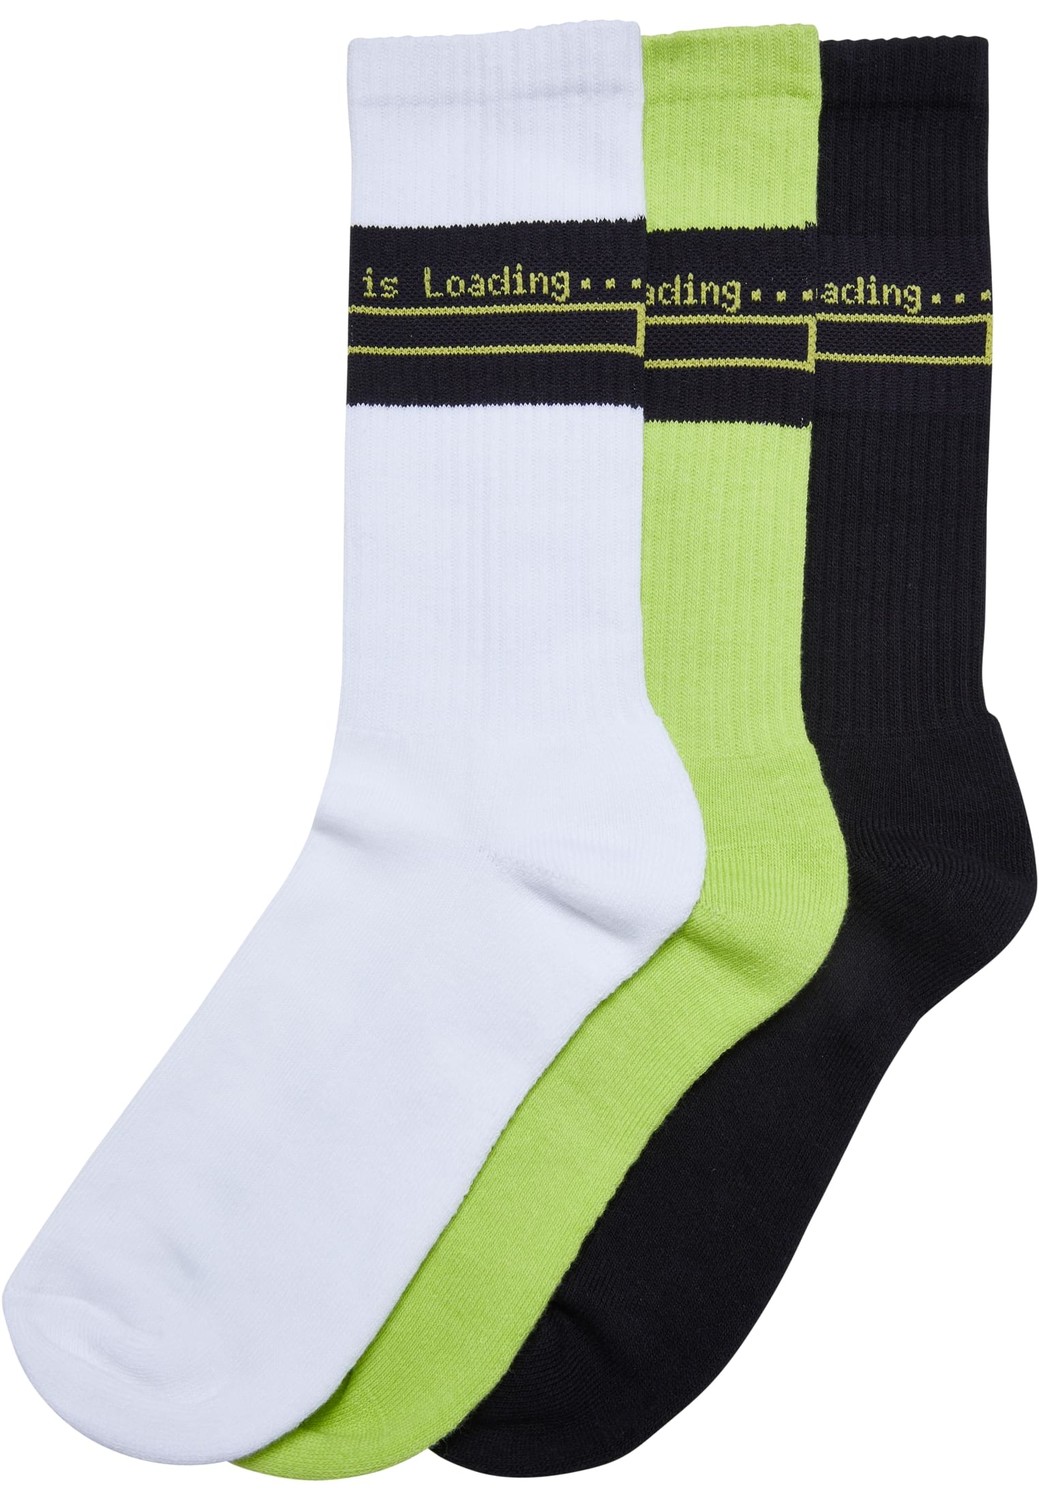 Loading Socks 3-Pack white/black/frozenyellow